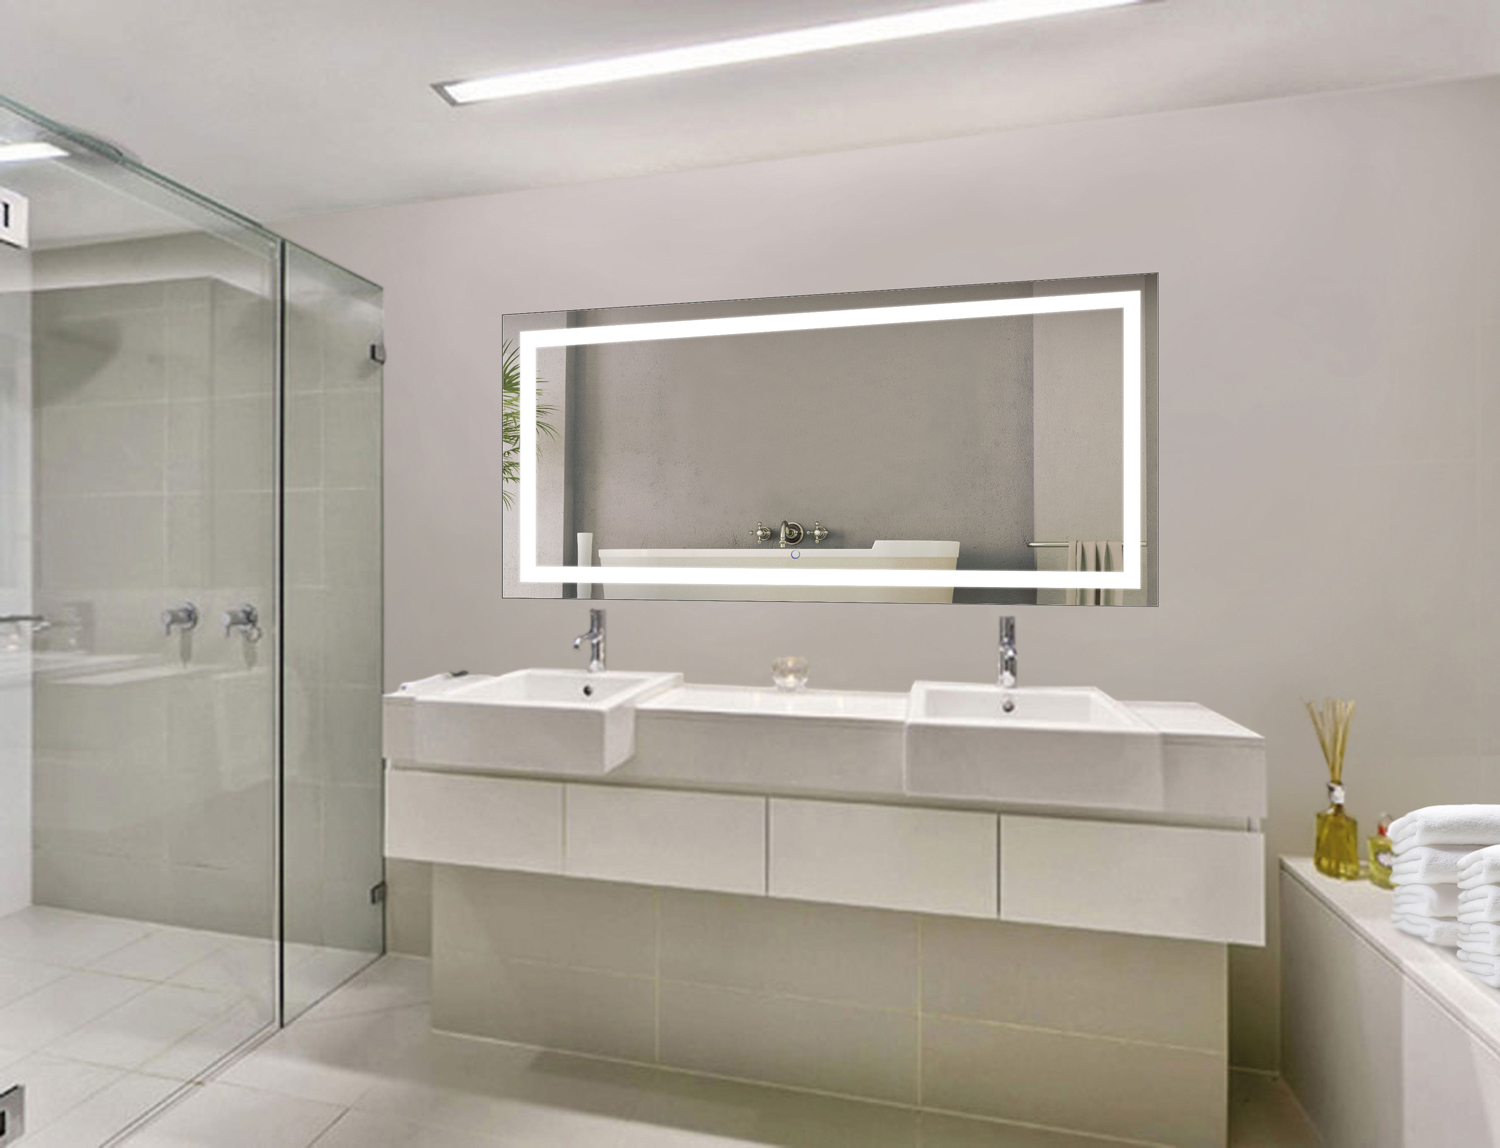 Bathroom Mirror Ideas For Double Grey Vanity